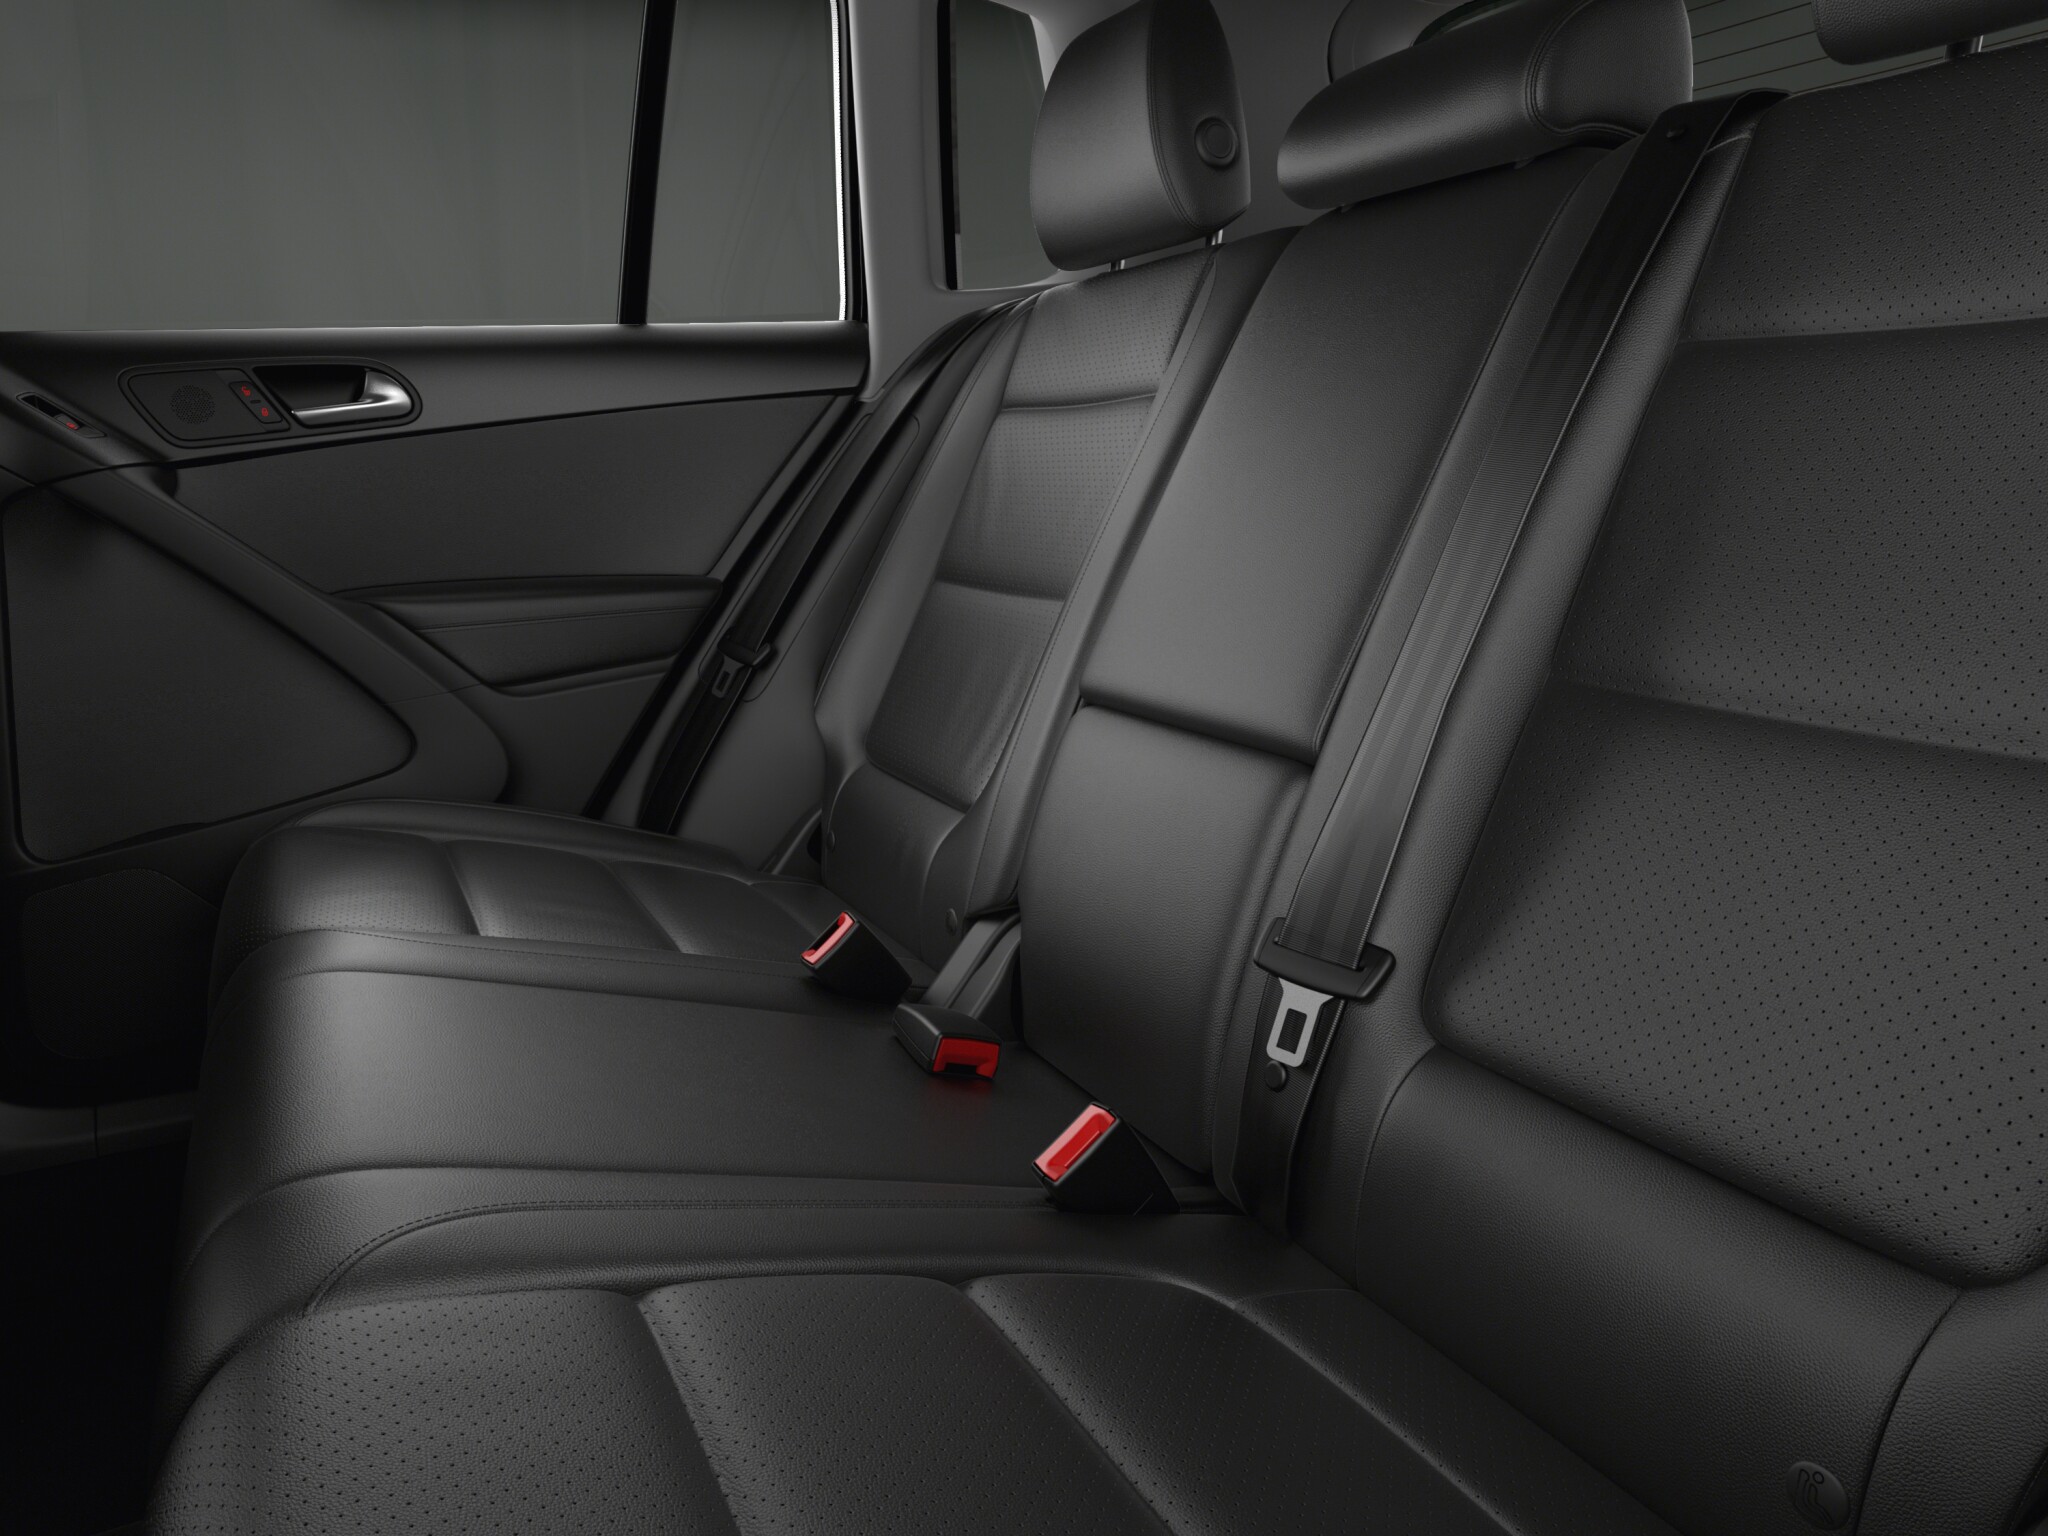 Volkswagen Tiguan Comfortline Diesel interior rear seat view